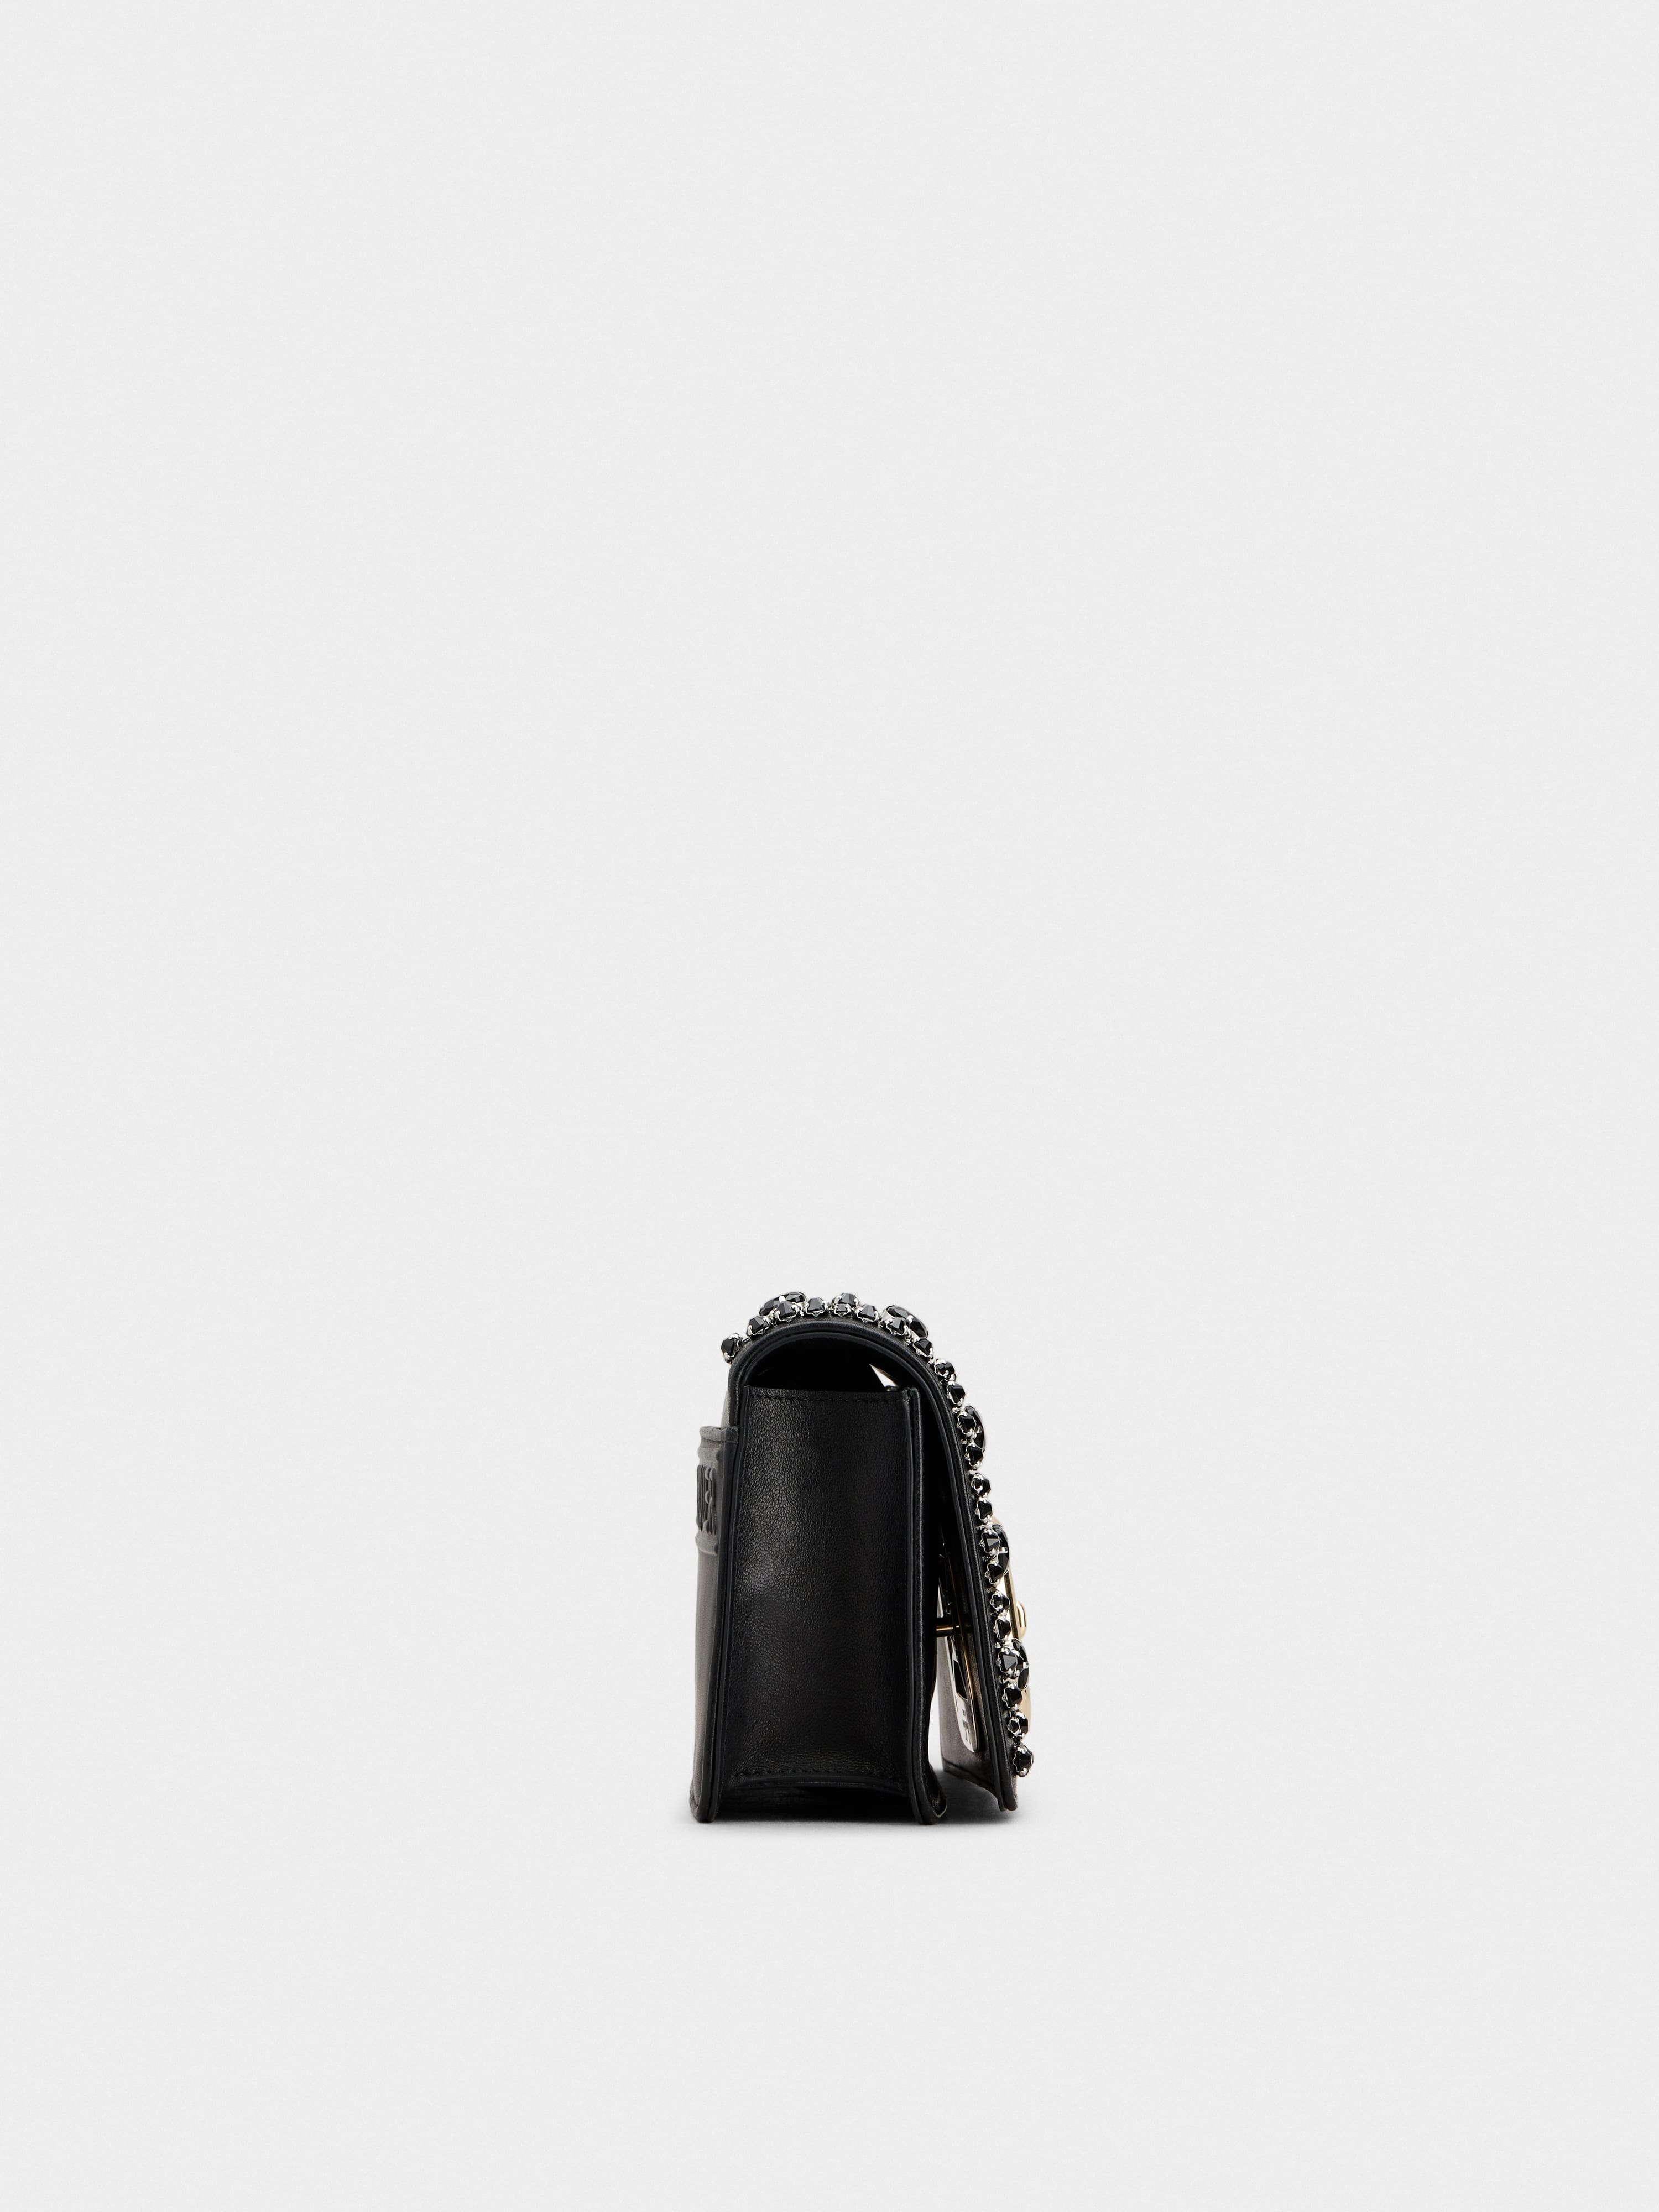 Viv Choc Leather Shoulder Bag in Black - Roger Vivier